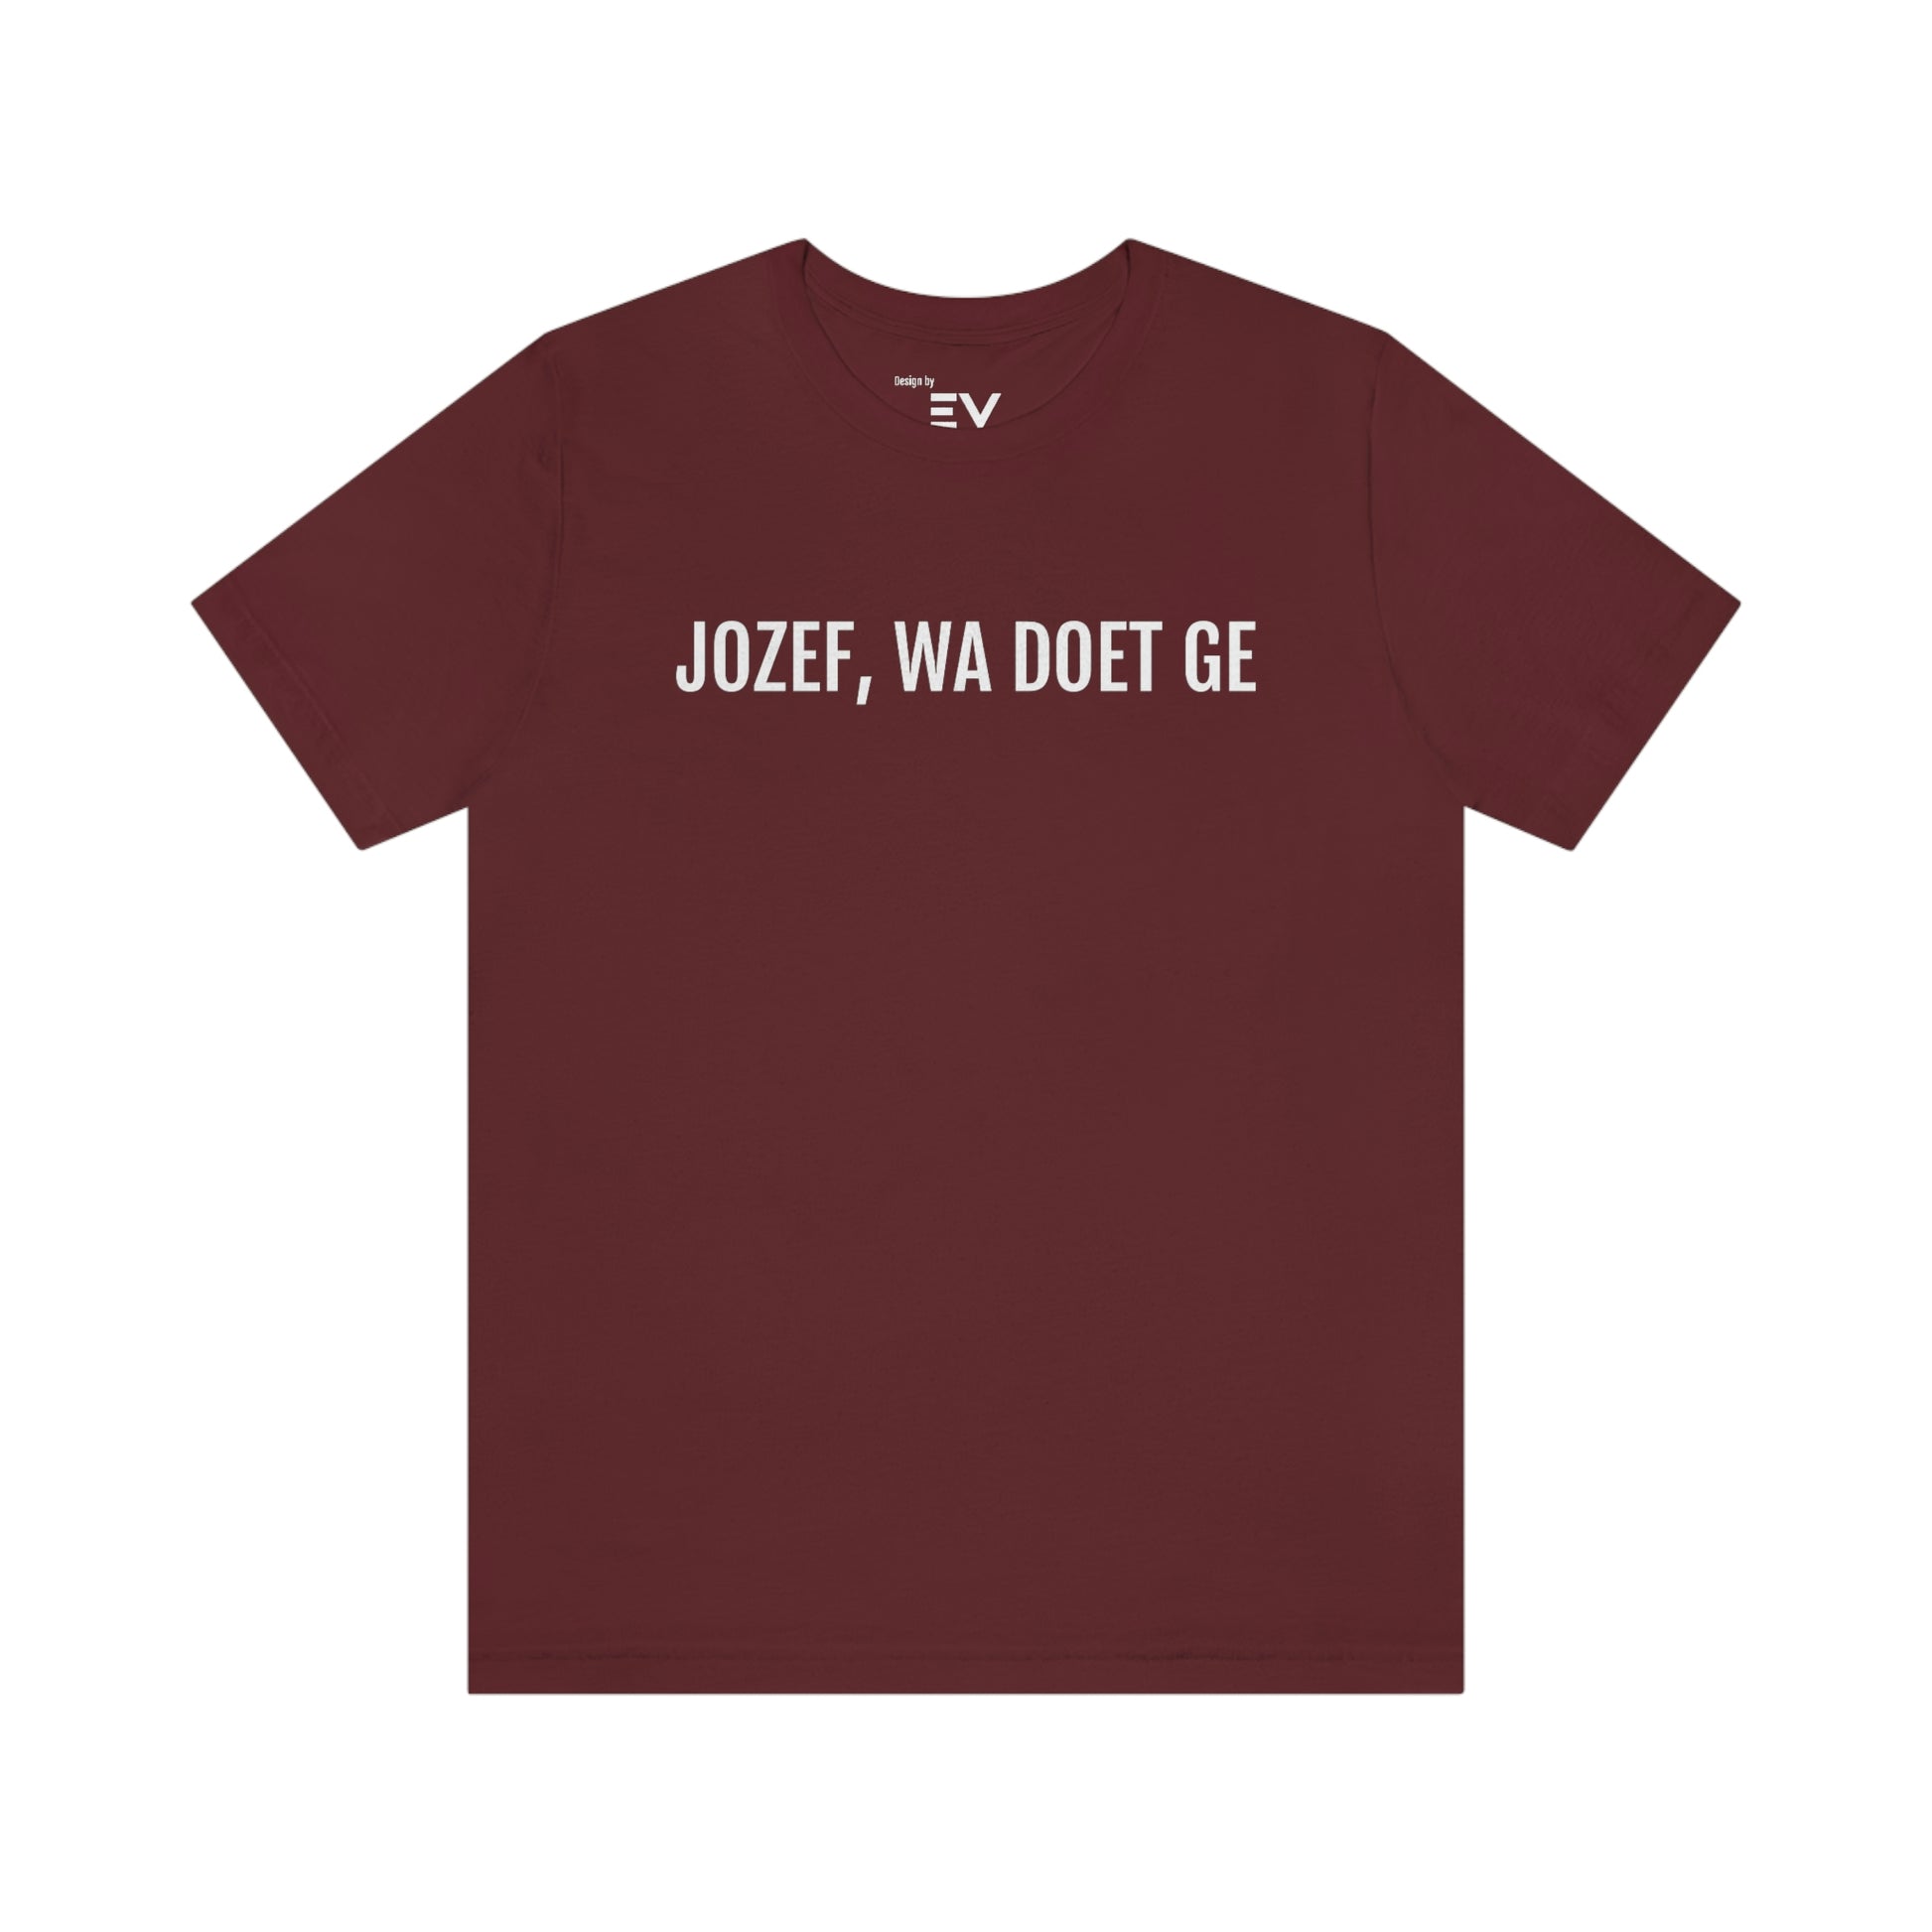 Jozef wa doet ge | Unisex T-Shirt uit Limburg - Rood